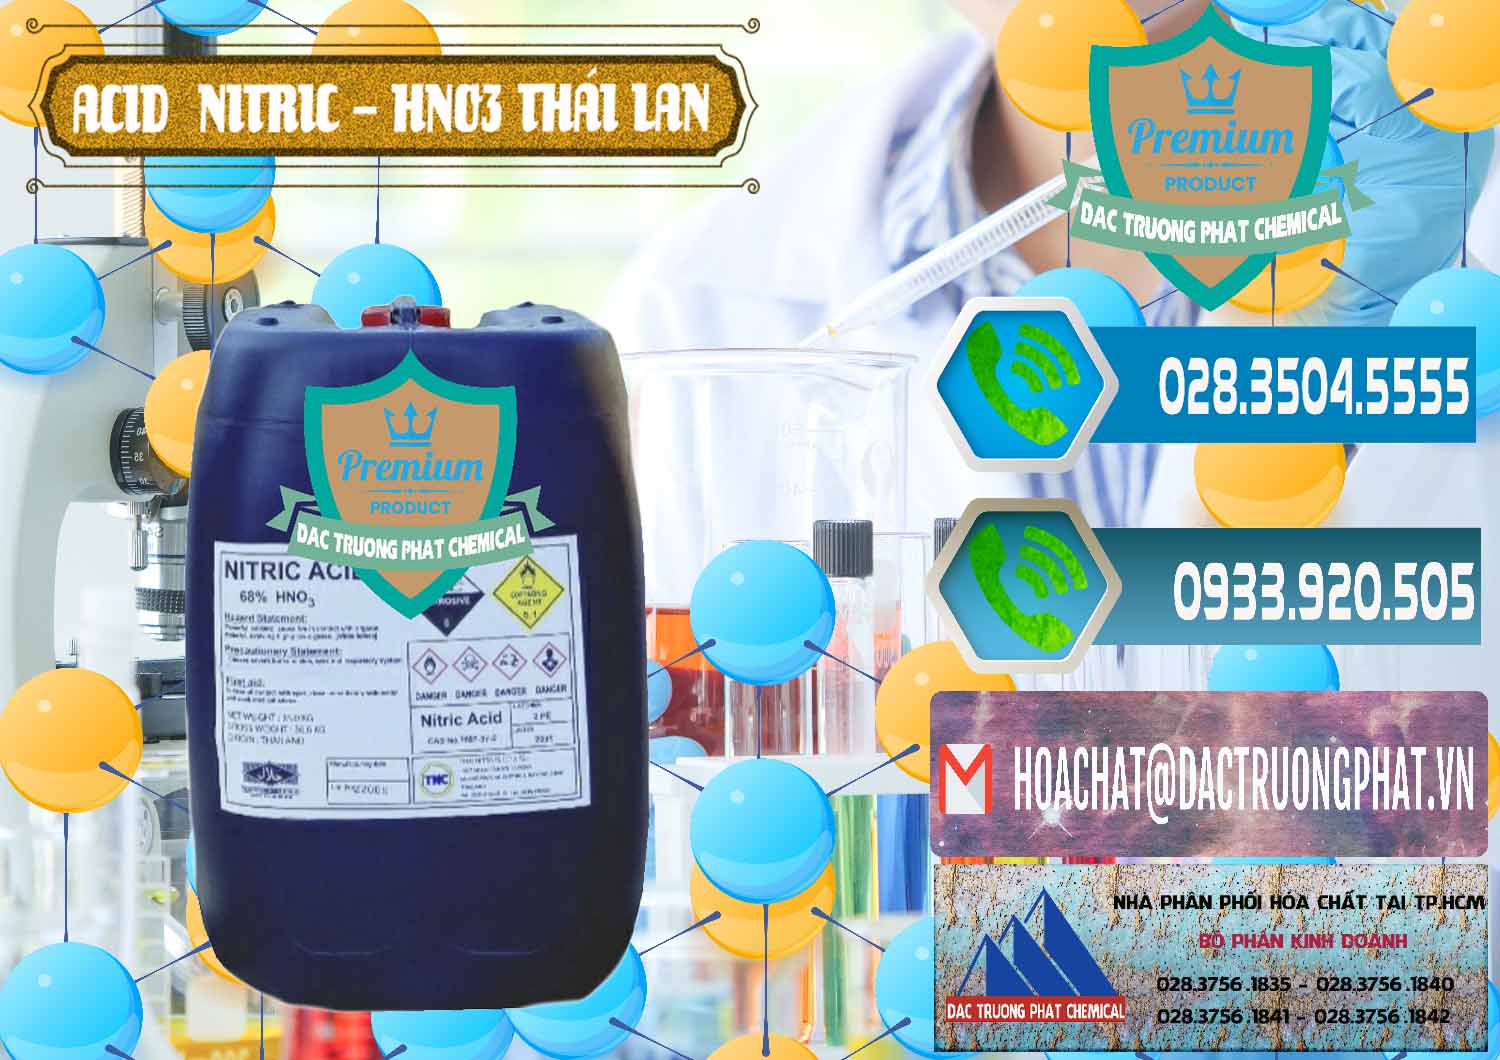 Chuyên kinh doanh & bán Acid Nitric – Axit Nitric HNO3 Thái Lan Thailand - 0344 - Cty bán - phân phối hóa chất tại TP.HCM - congtyhoachat.net